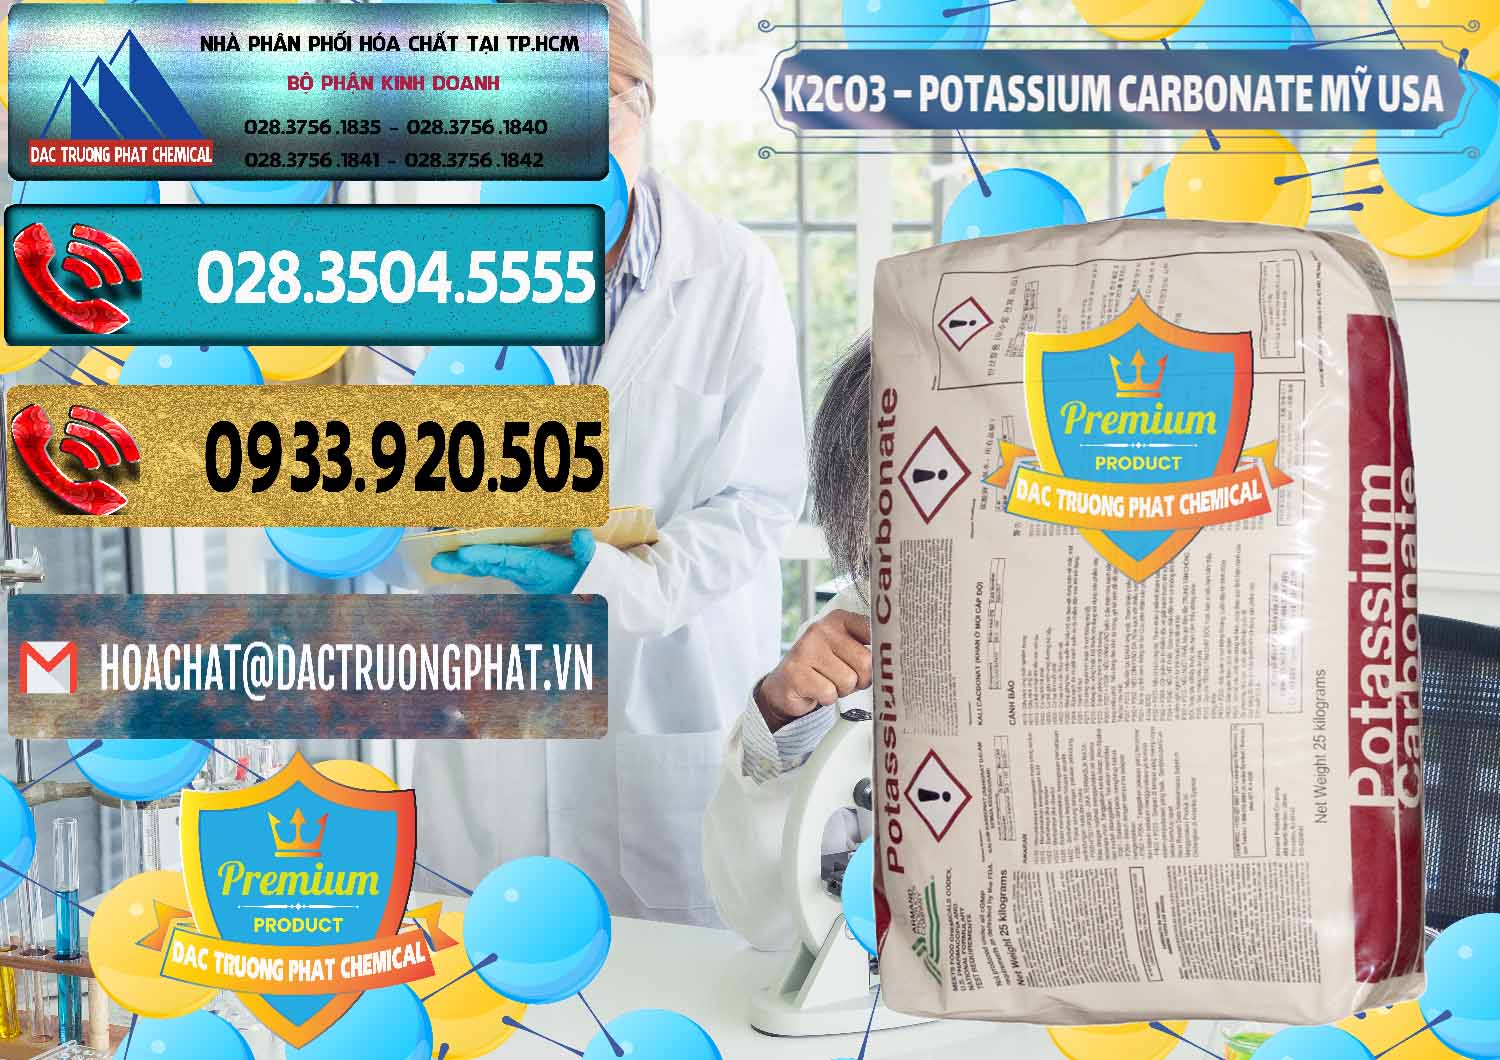 Nơi chuyên bán & phân phối K2Co3 – Potassium Carbonate Mỹ USA - 0082 - Cty chuyên cung cấp - kinh doanh hóa chất tại TP.HCM - hoachatdetnhuom.com